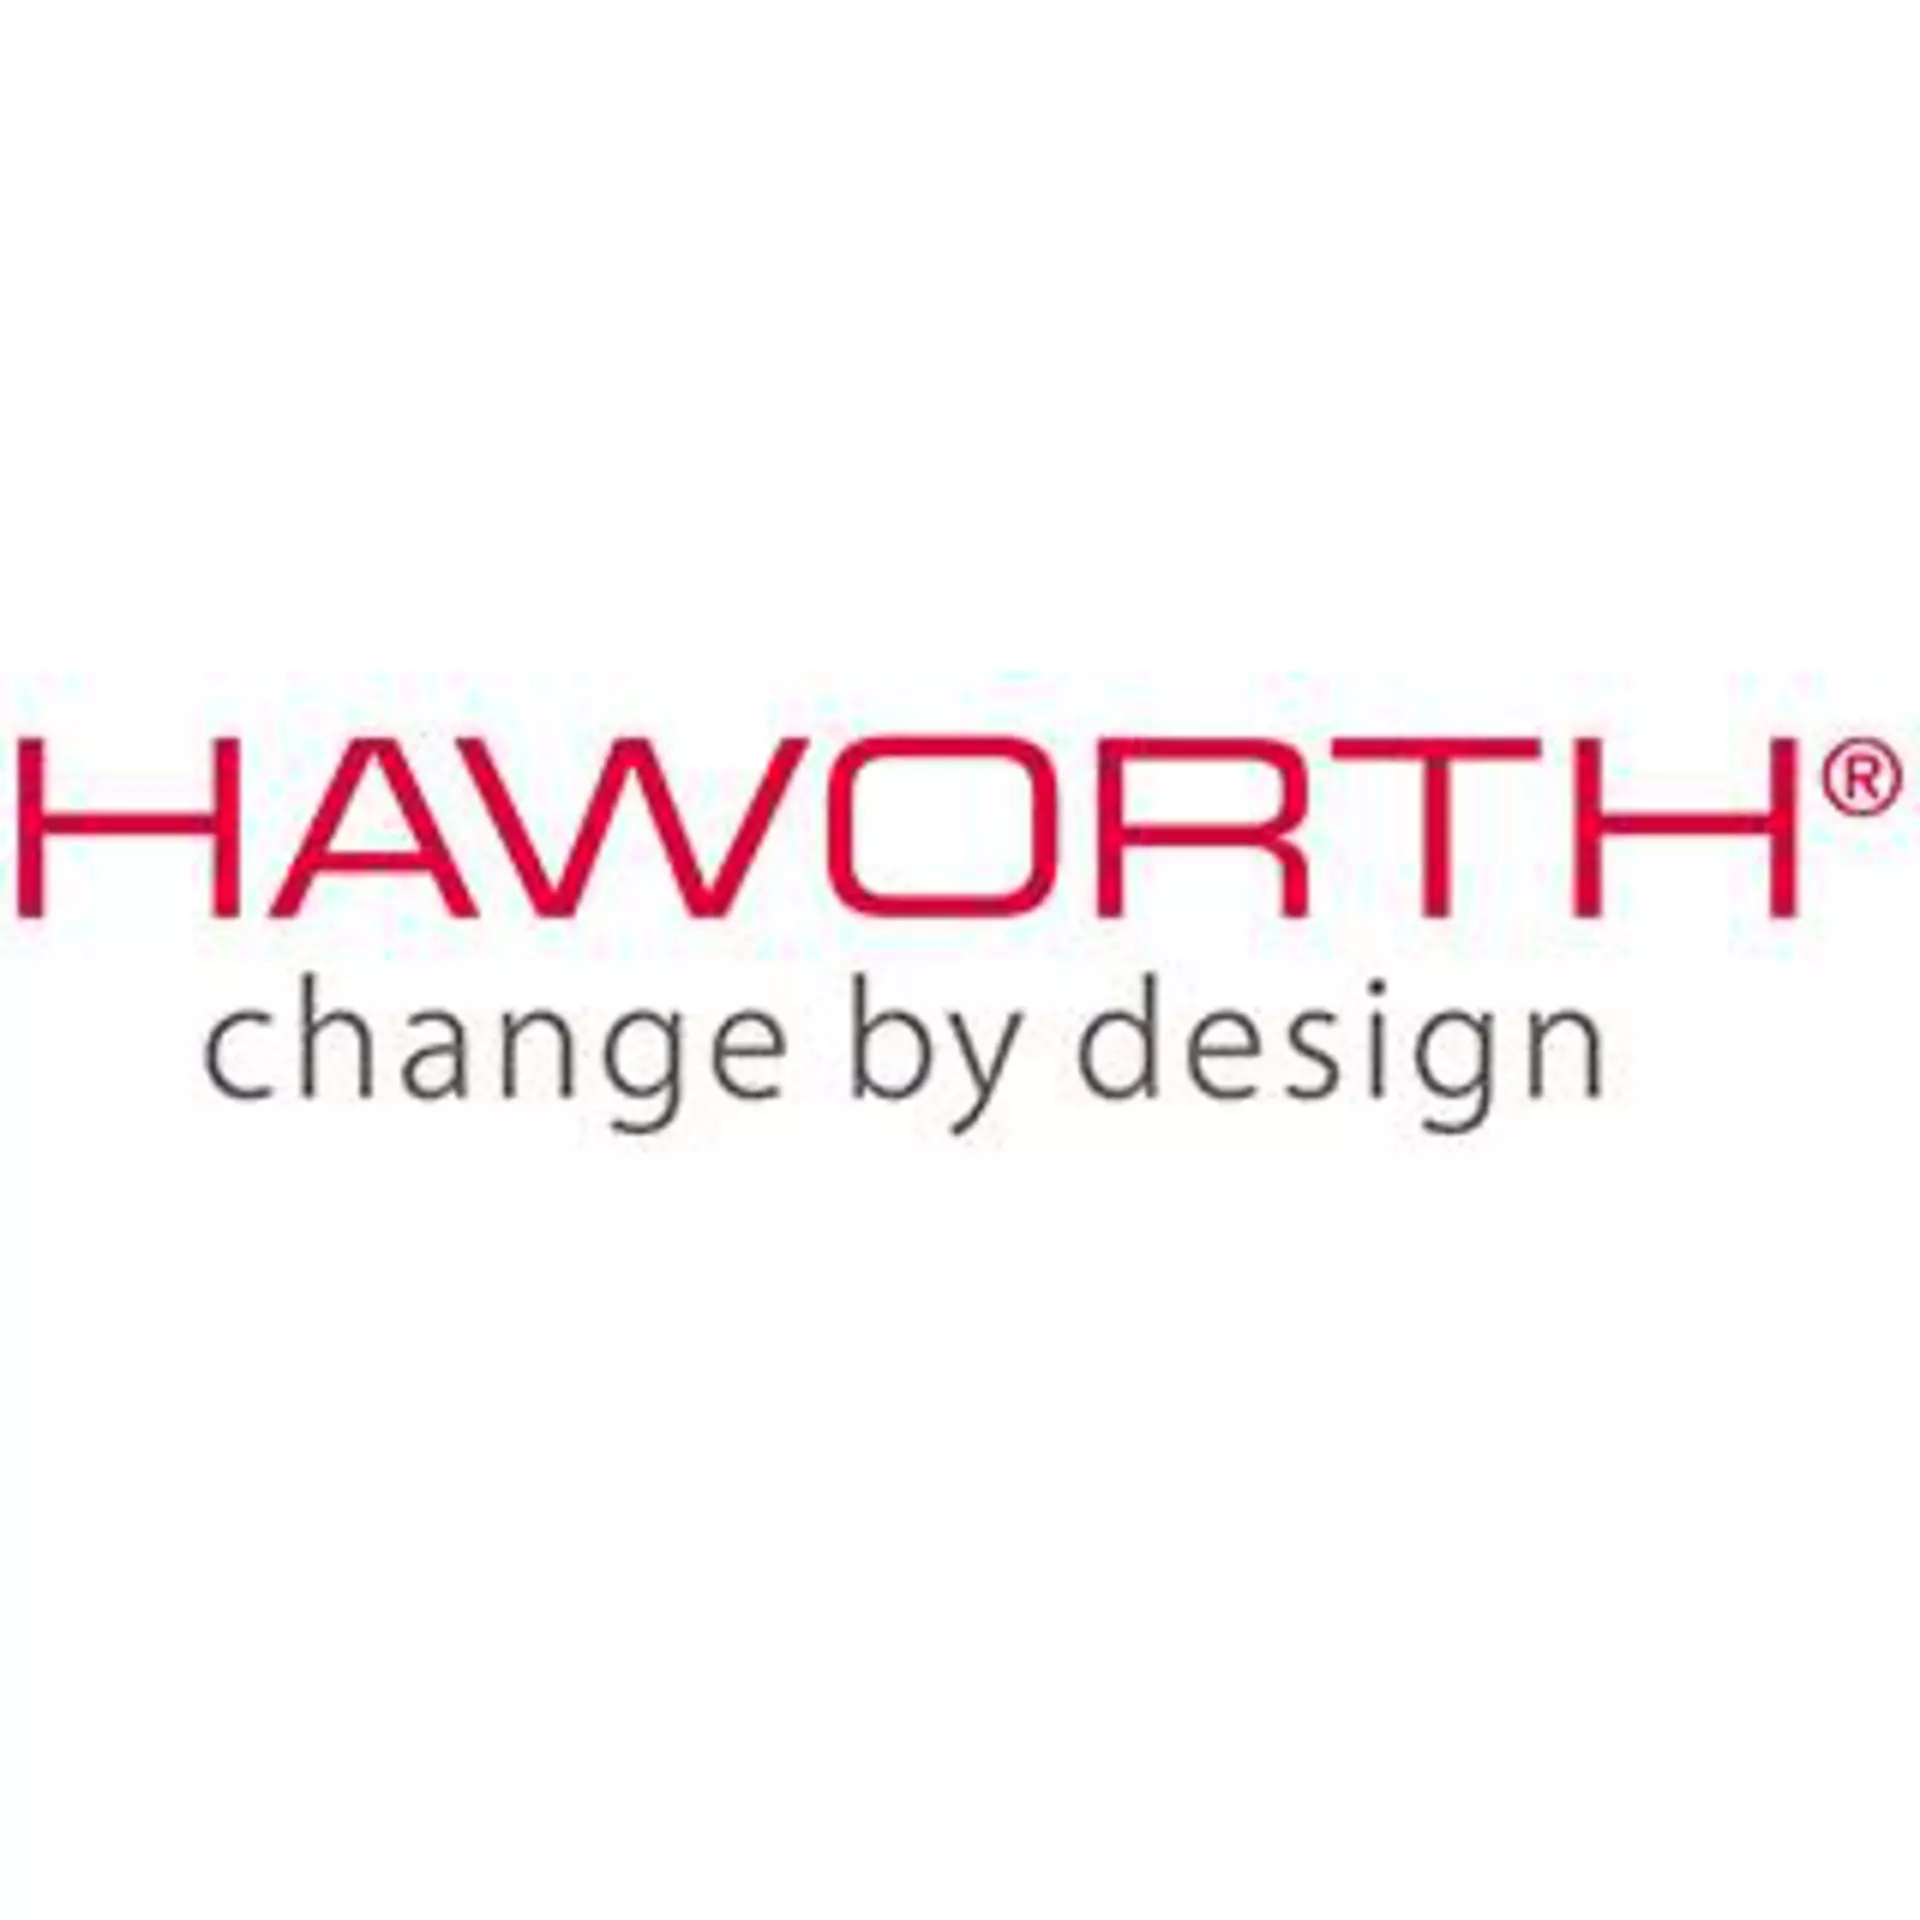 Haworth, Trennwände, Bürmöbel, Zubehör bei Möbel Inhofer